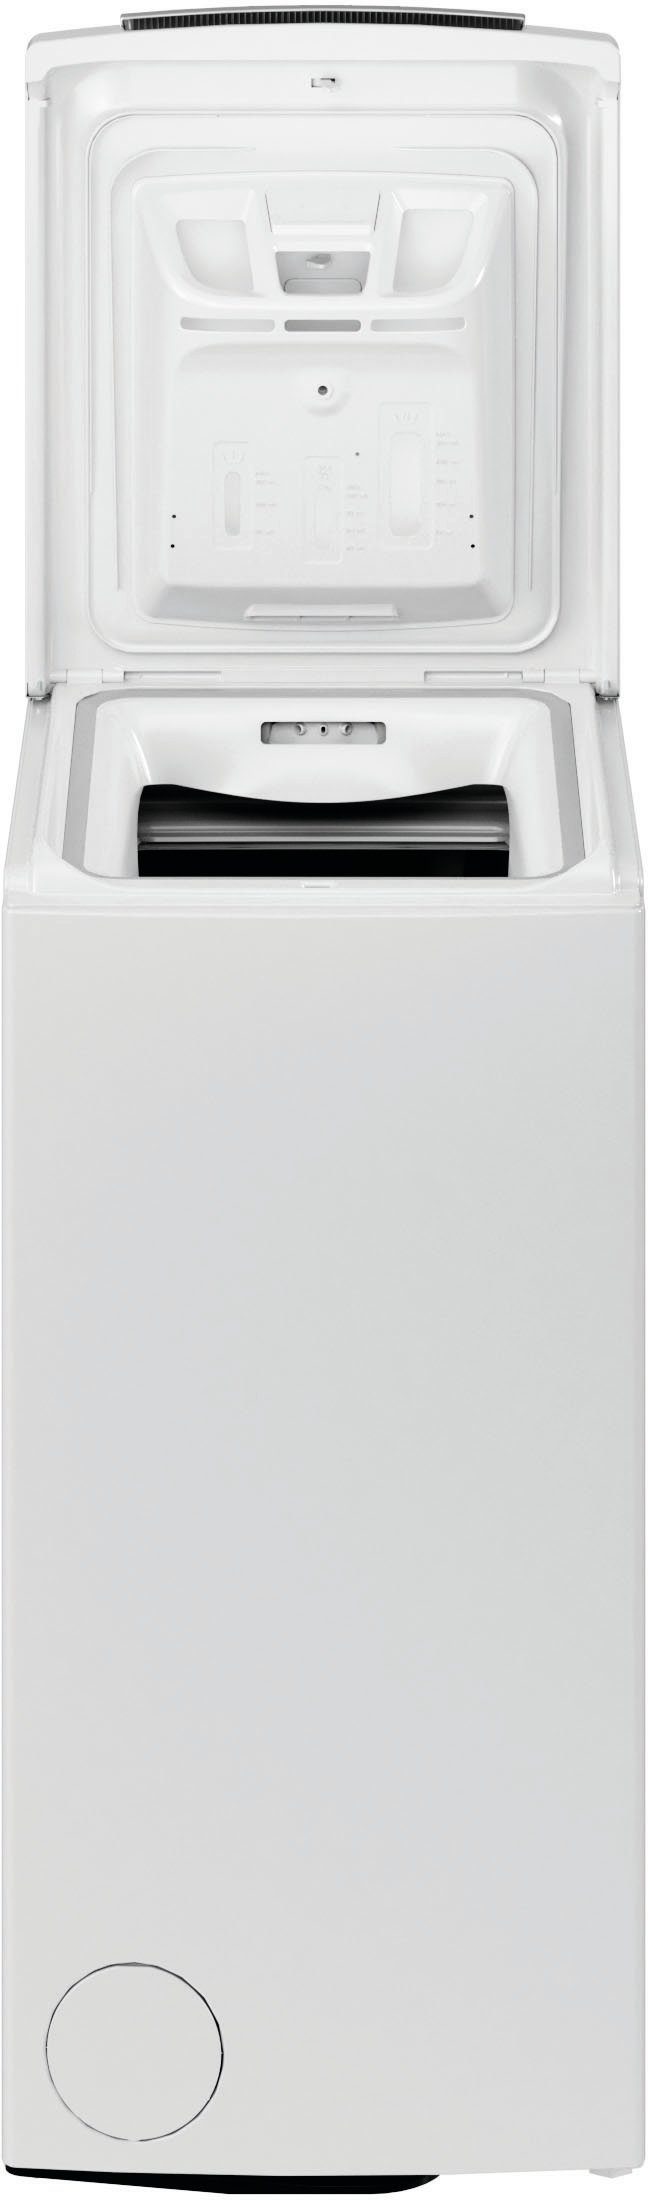 BAUKNECHT Waschmaschine 6,5 Jahre 1200 6513 WMT kg, Herstellergarantie 4 CC, Toplader U/min